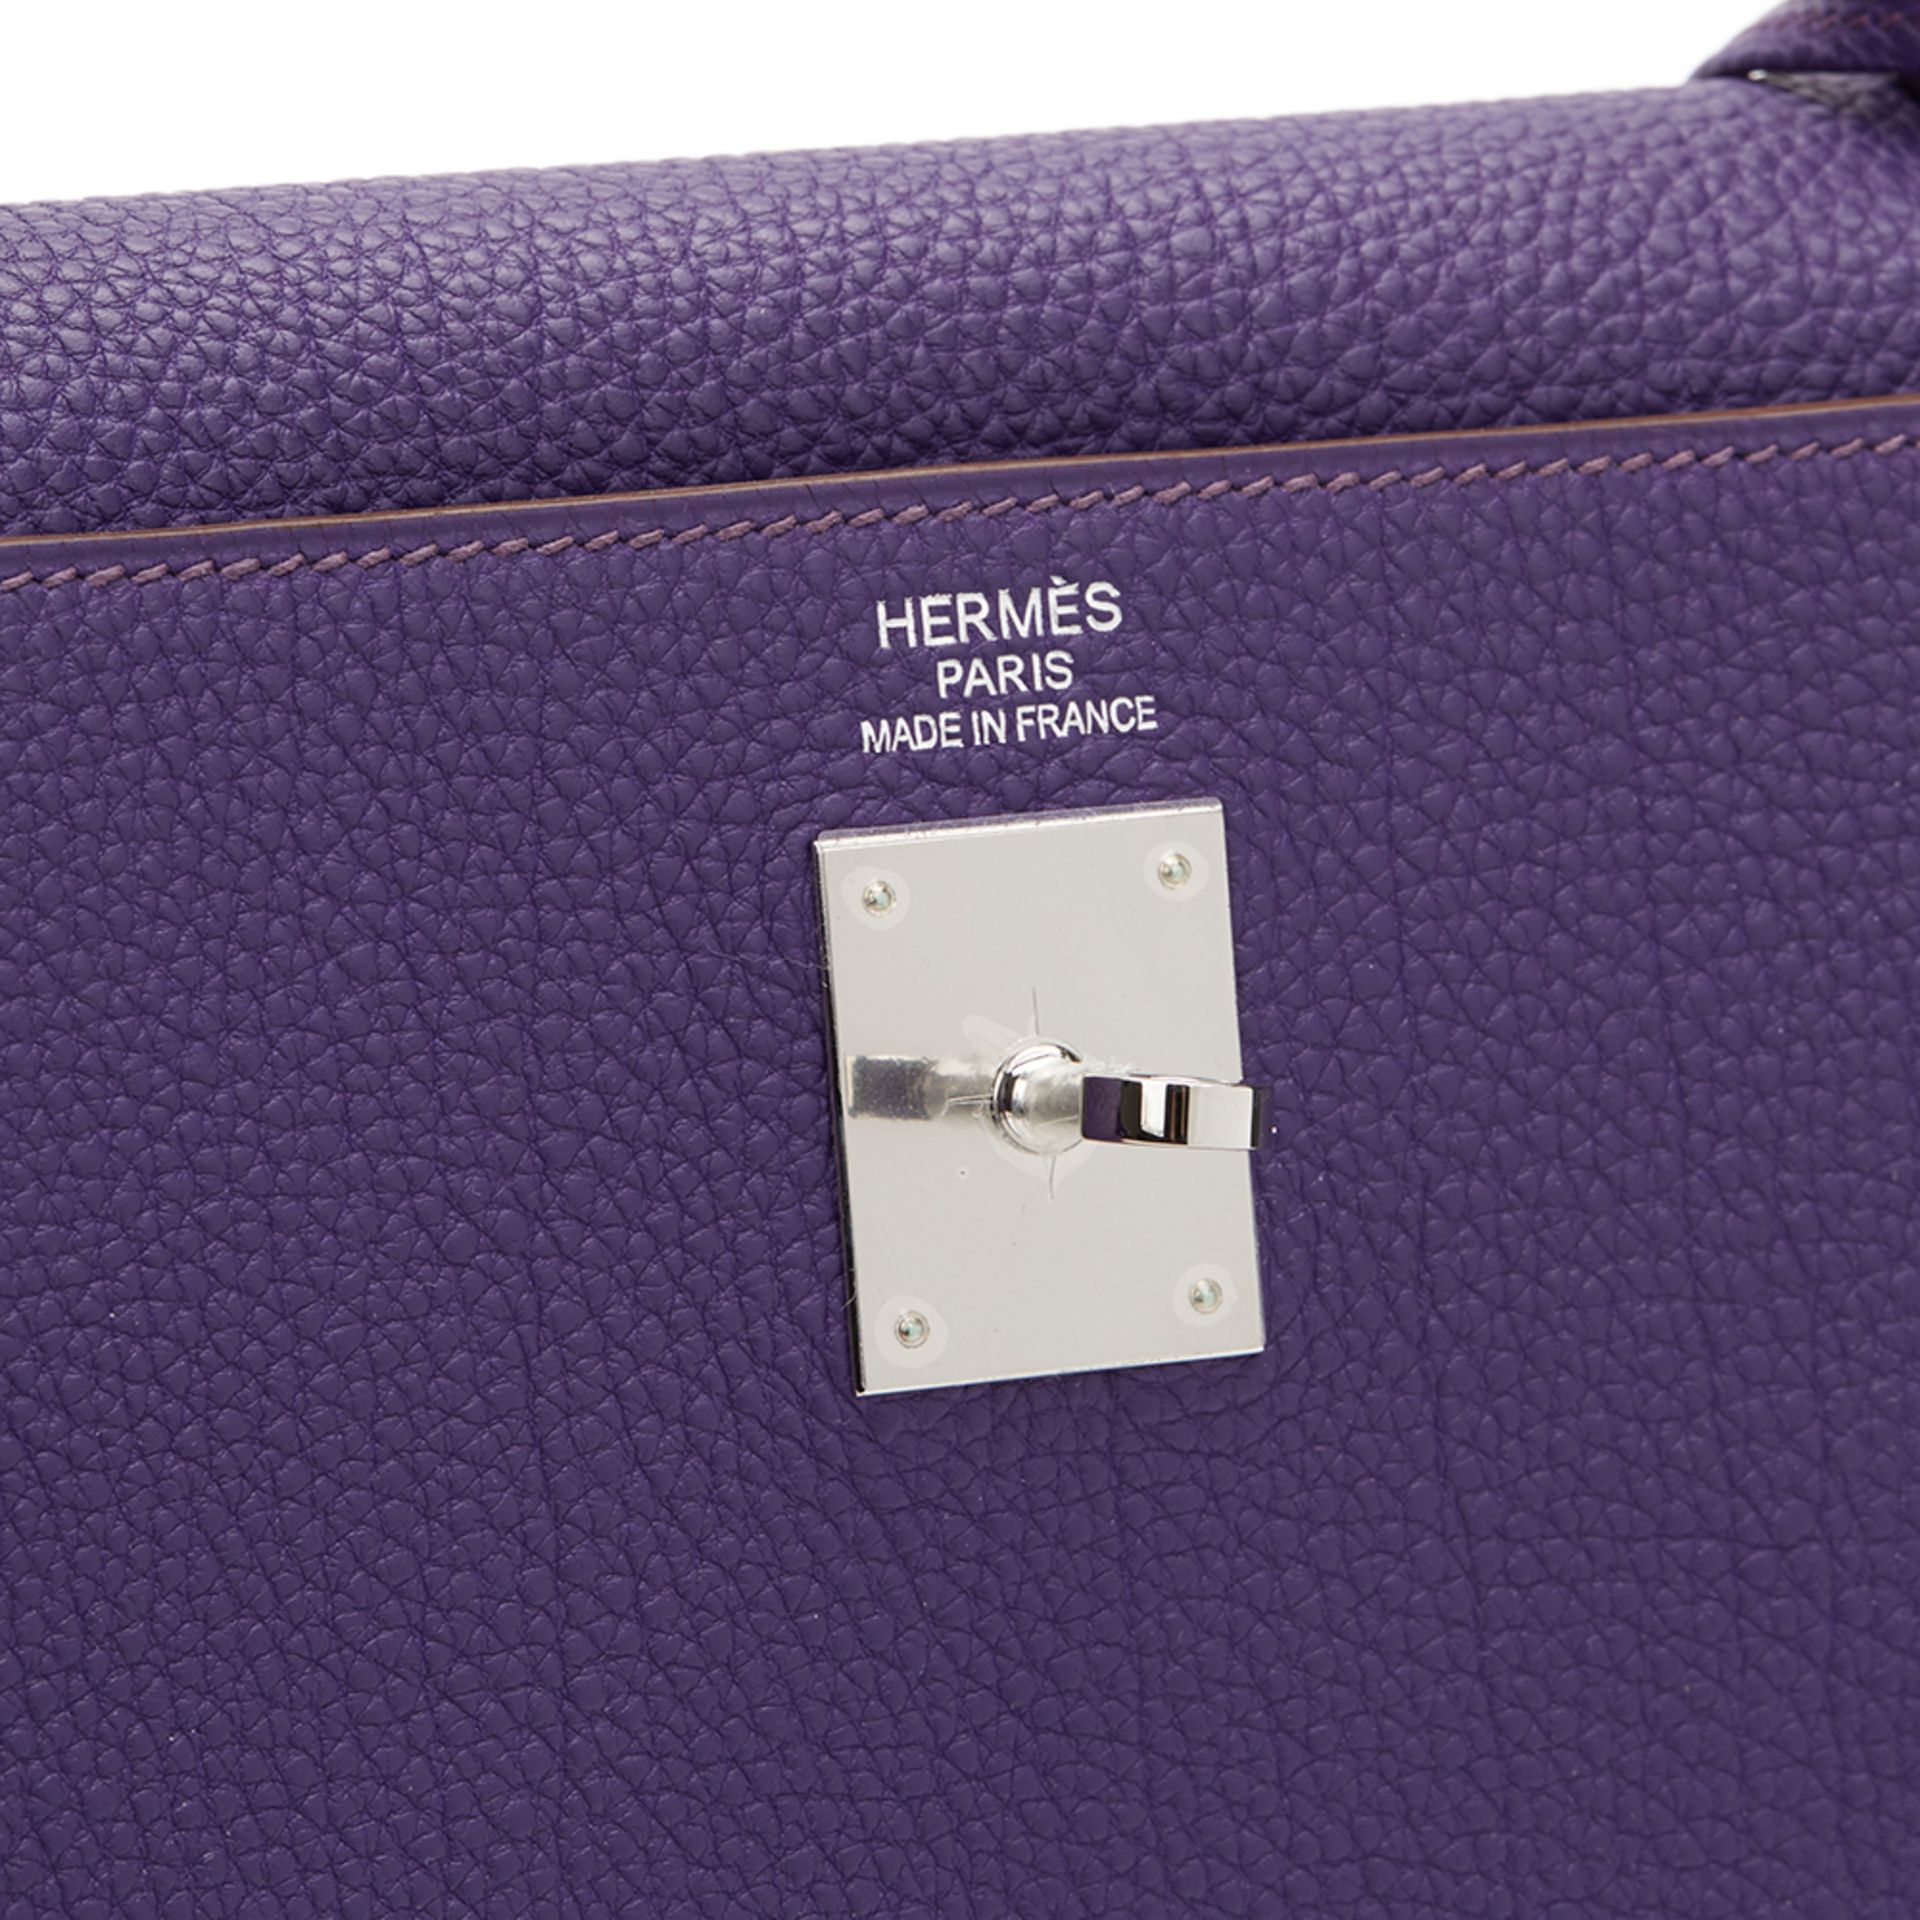 Hermes Iris Togo Leather Kelly 35cm Retourne - Image 8 of 10